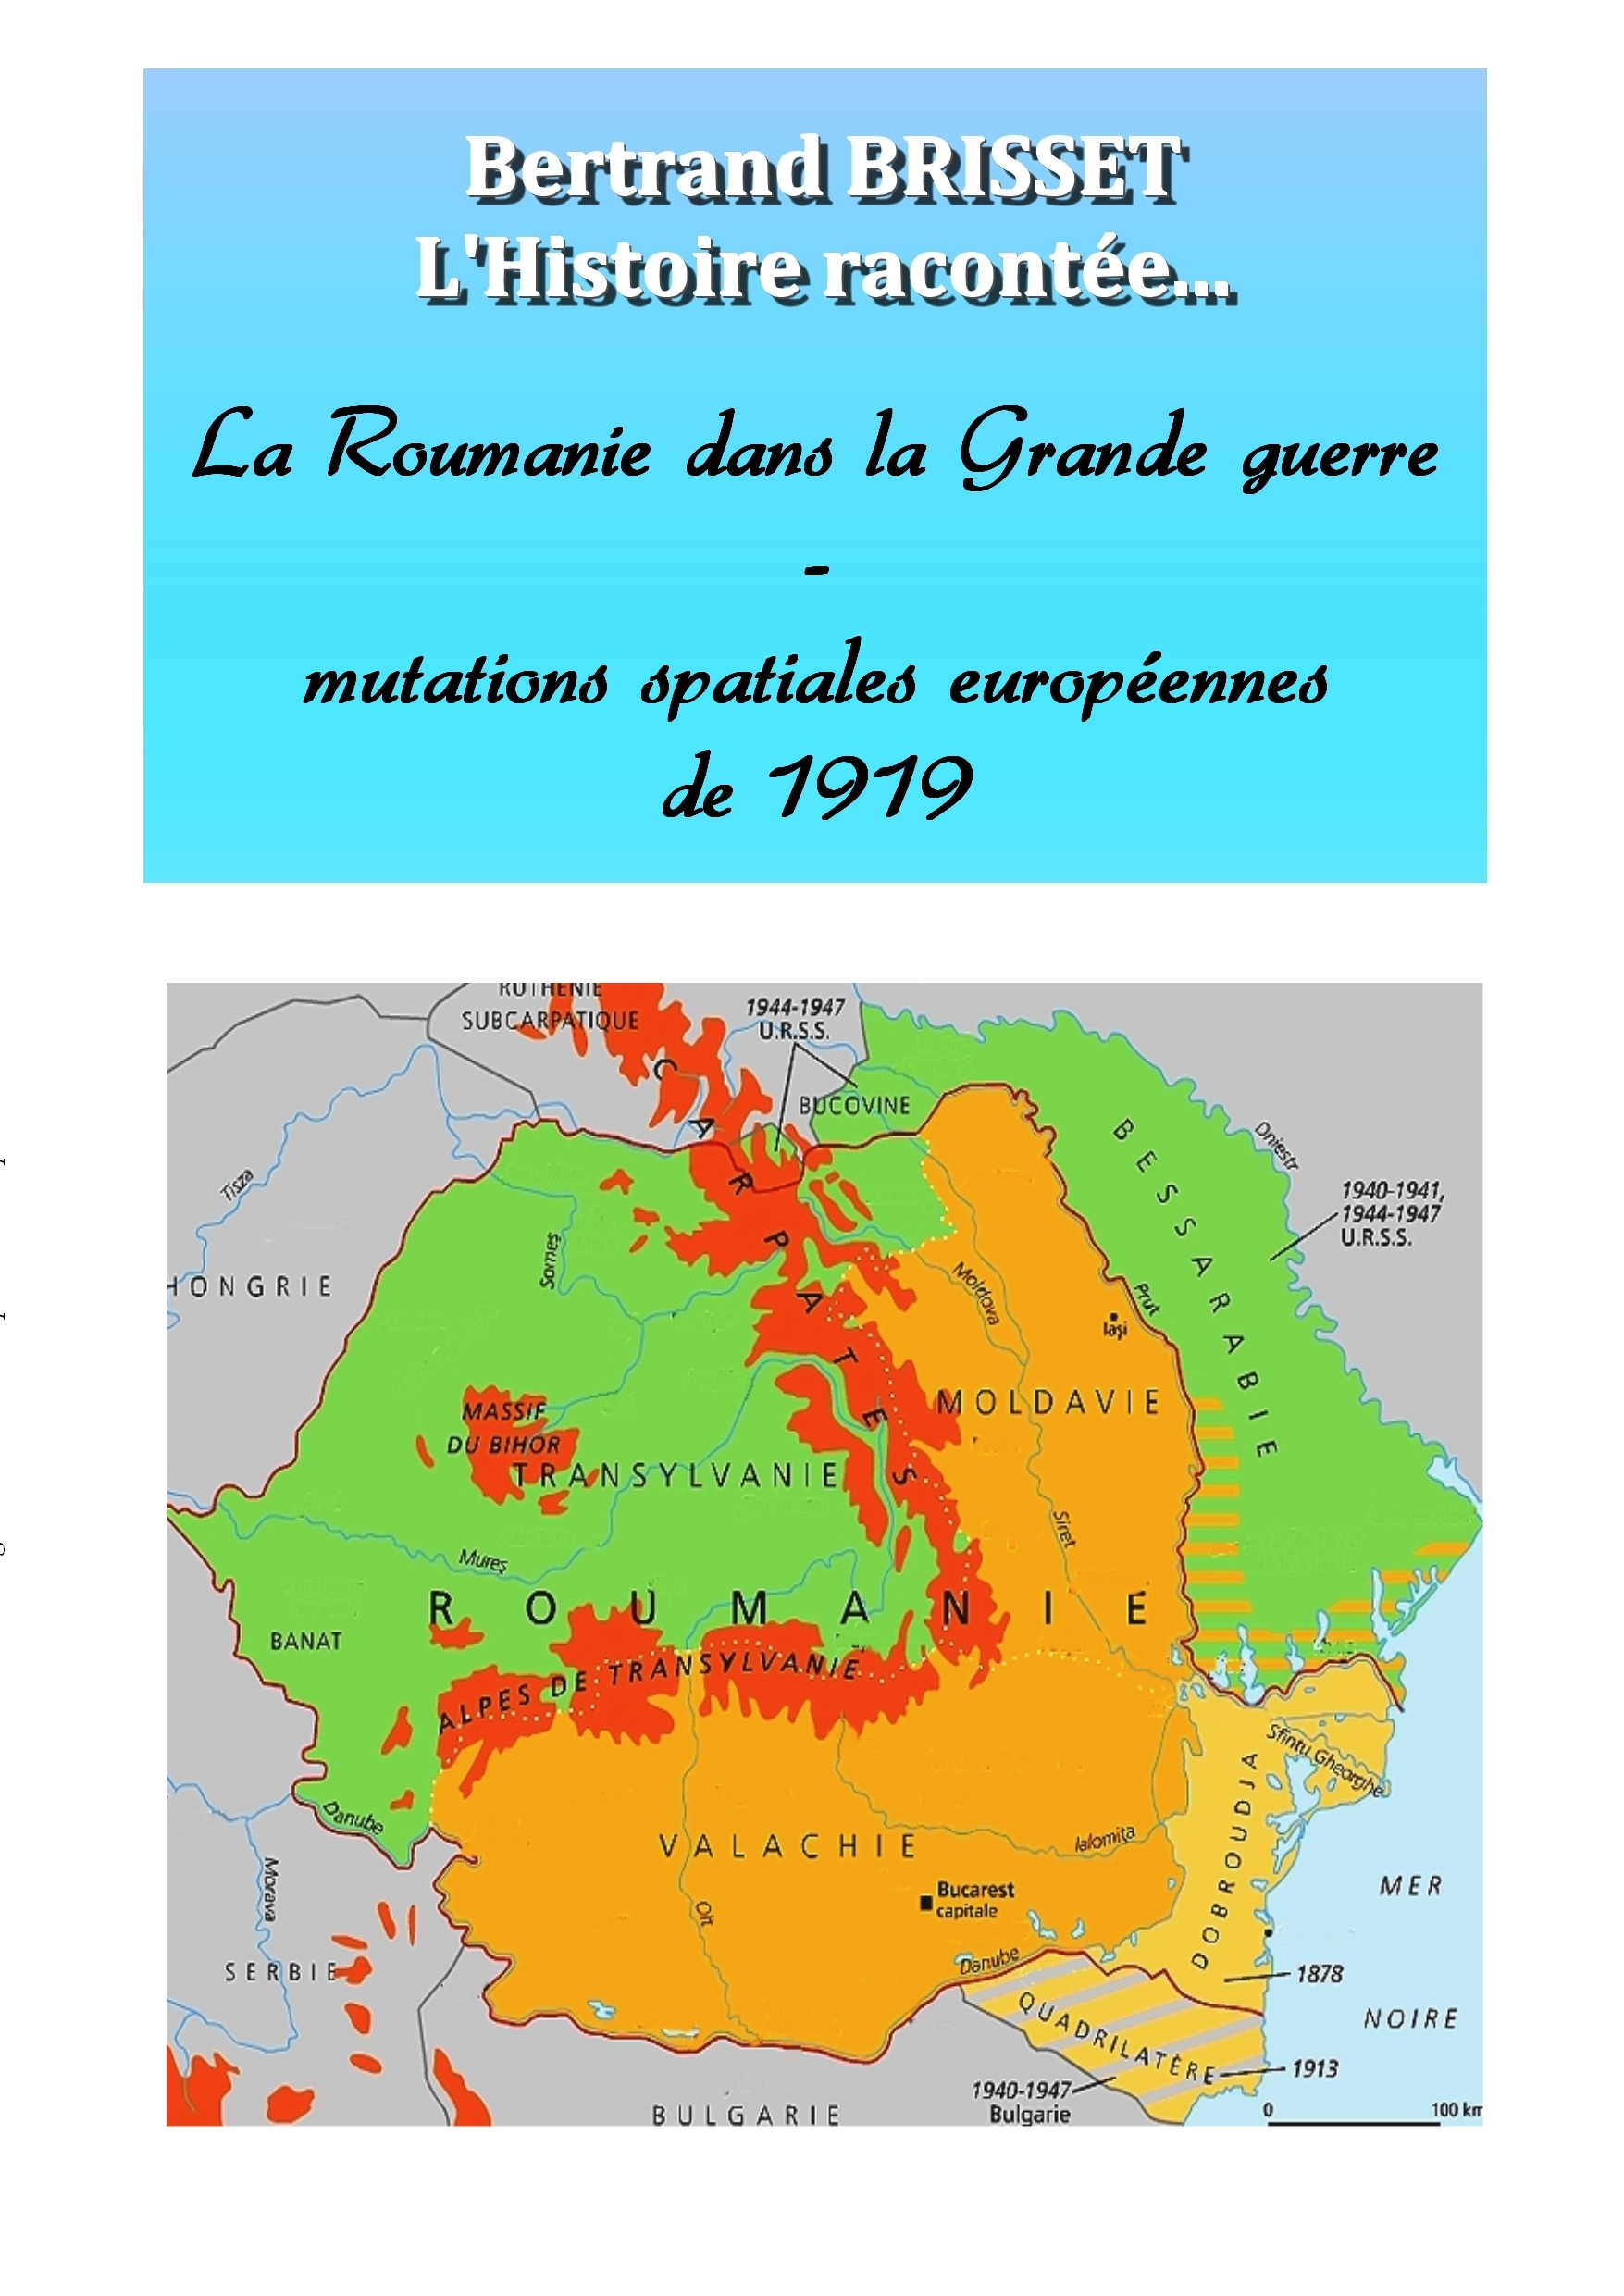 La Roumanie dans la Grande guerre